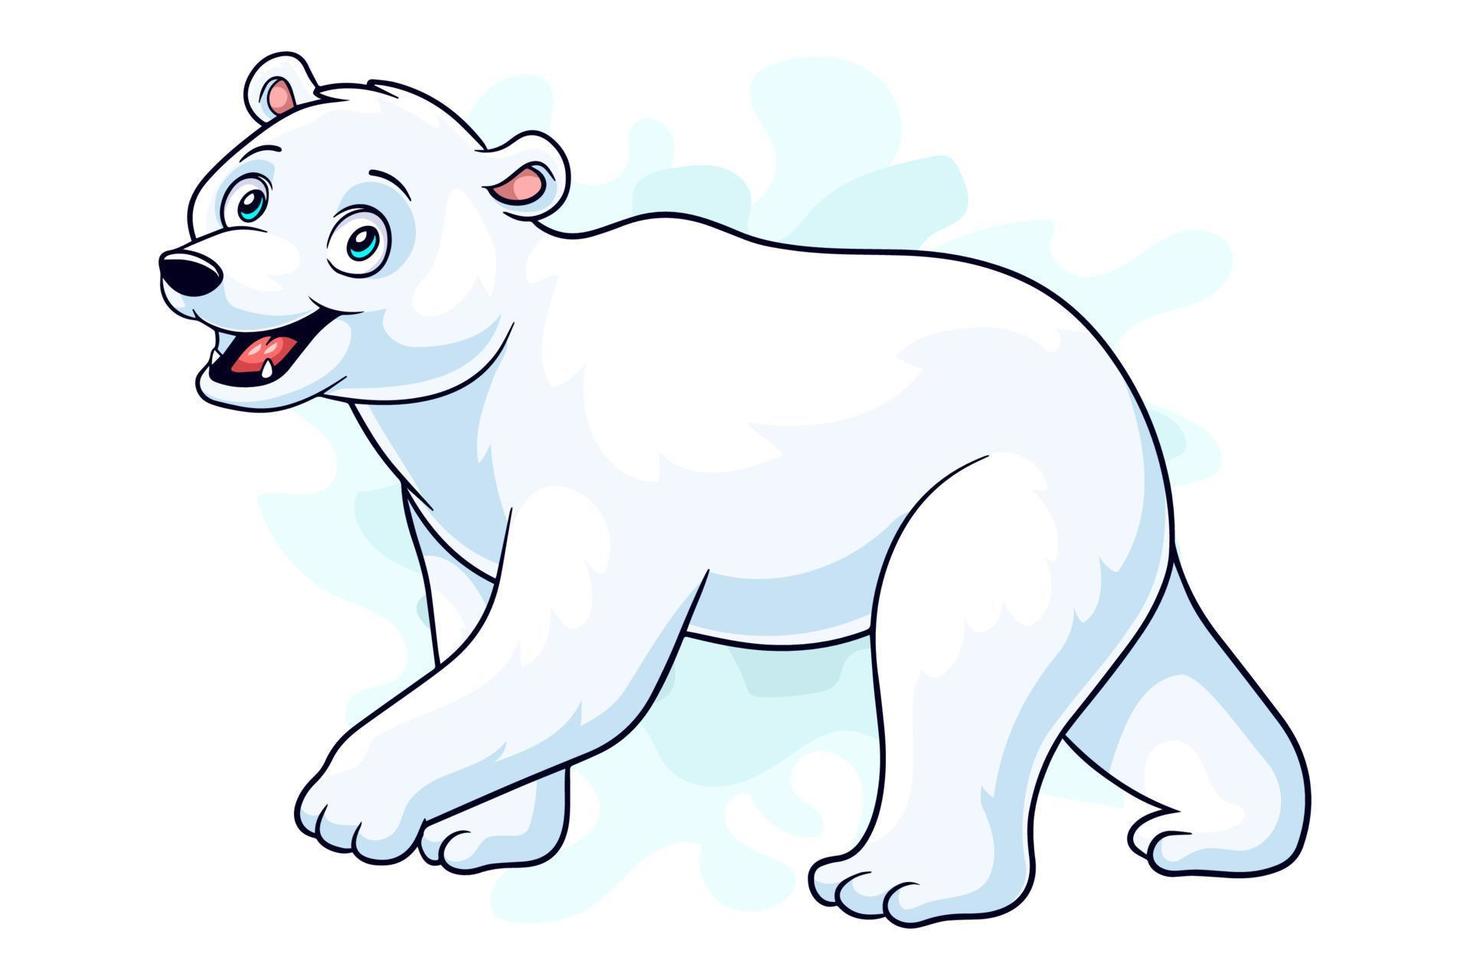 Cartoon funny polar bear cartoon isolated on white background vector